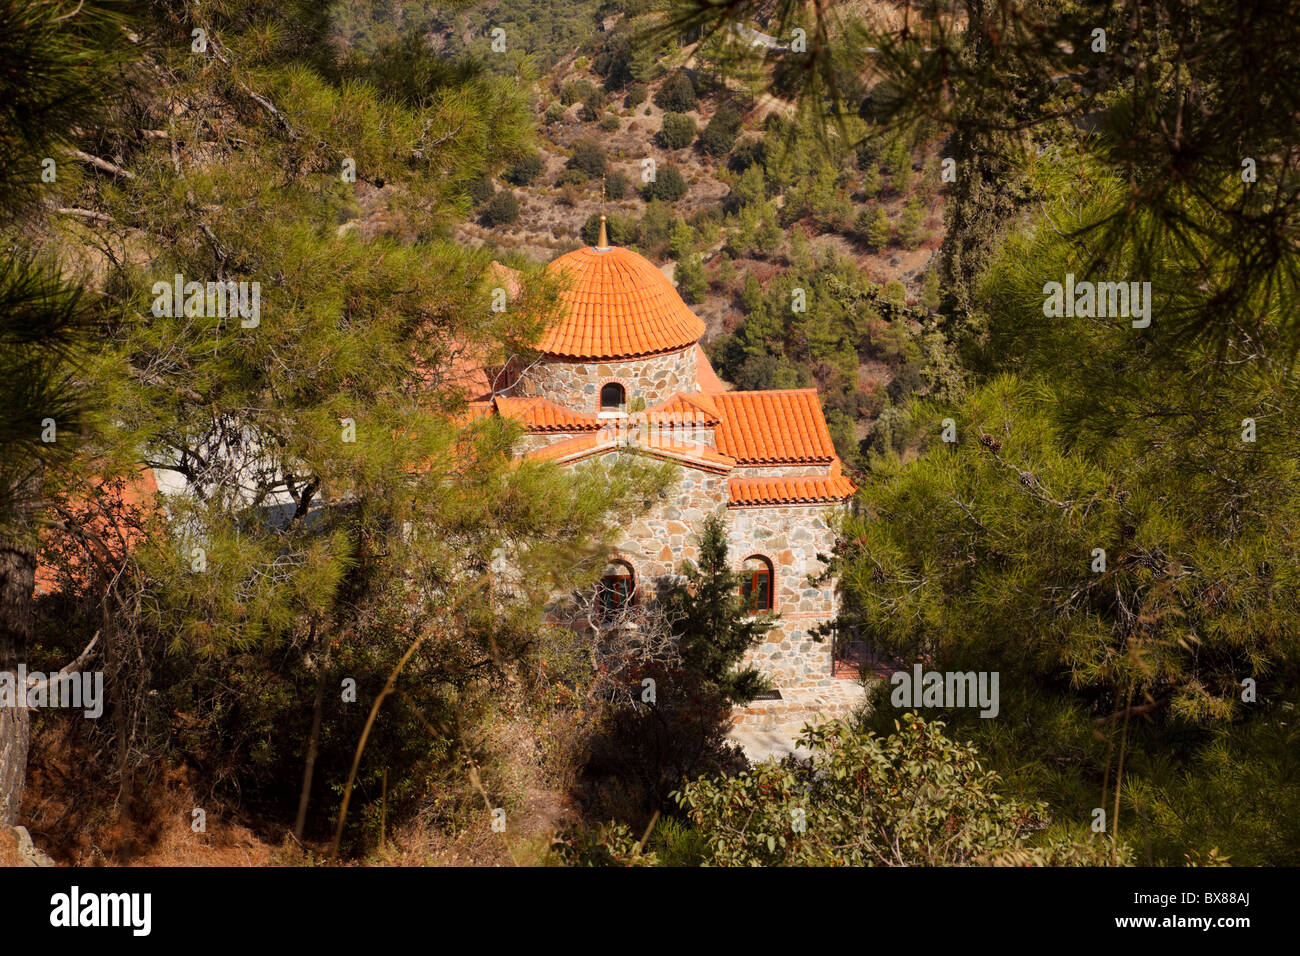 Panagia tou Machaira monastery and church, Troodos, Cyprus. Stock Photo